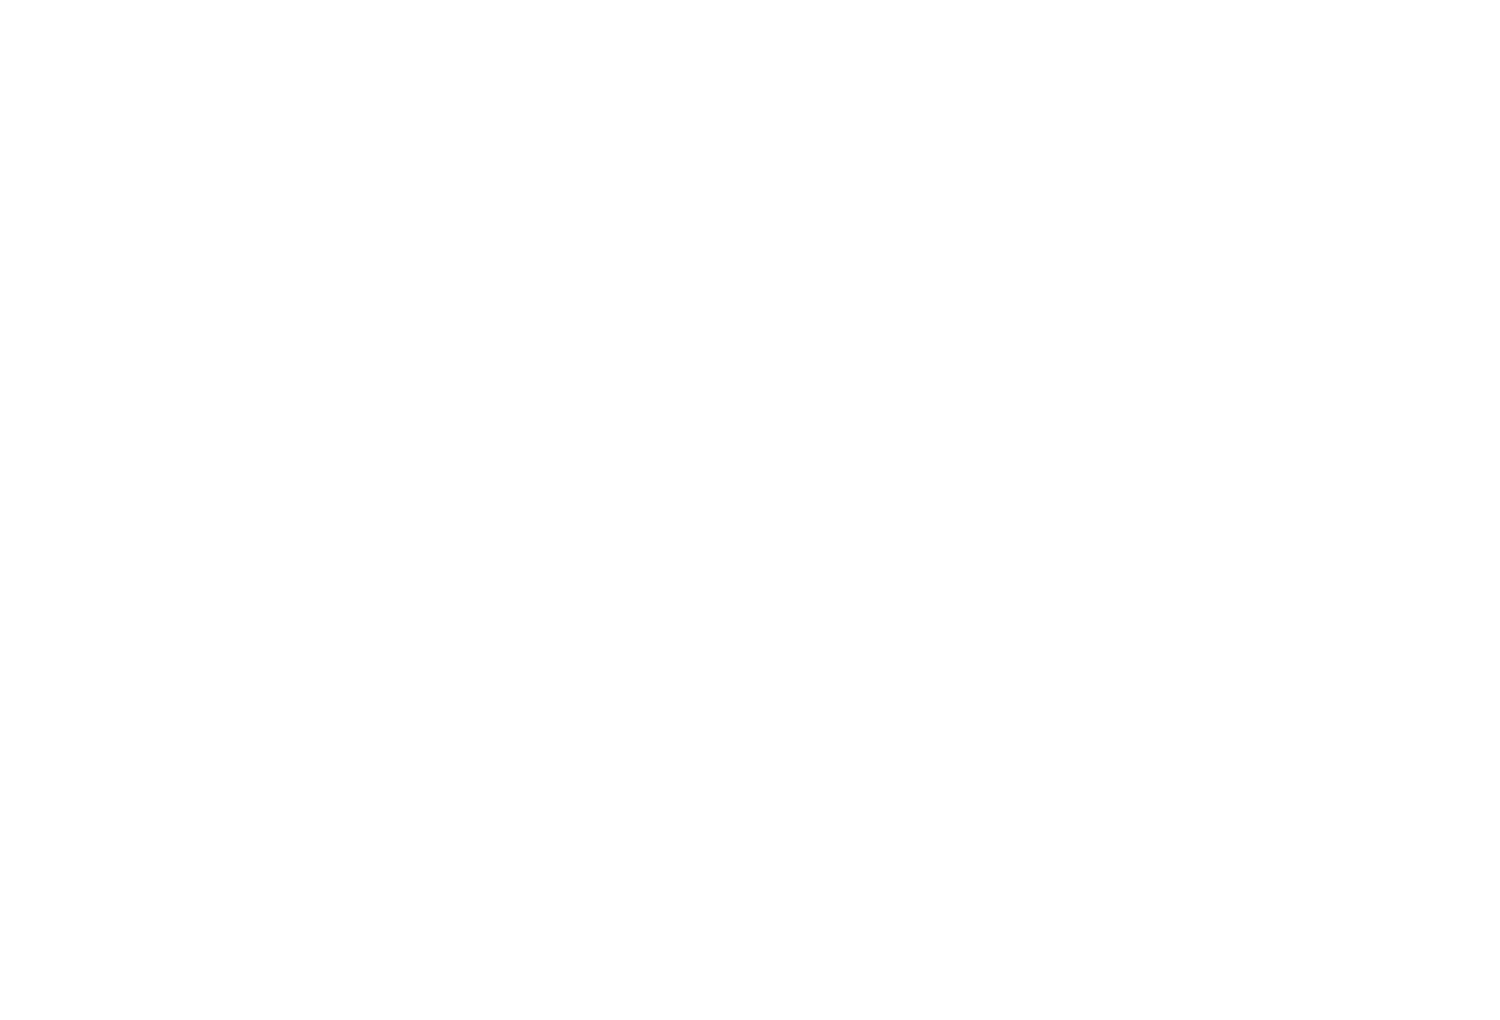 AlpenGlow Adventure Catering